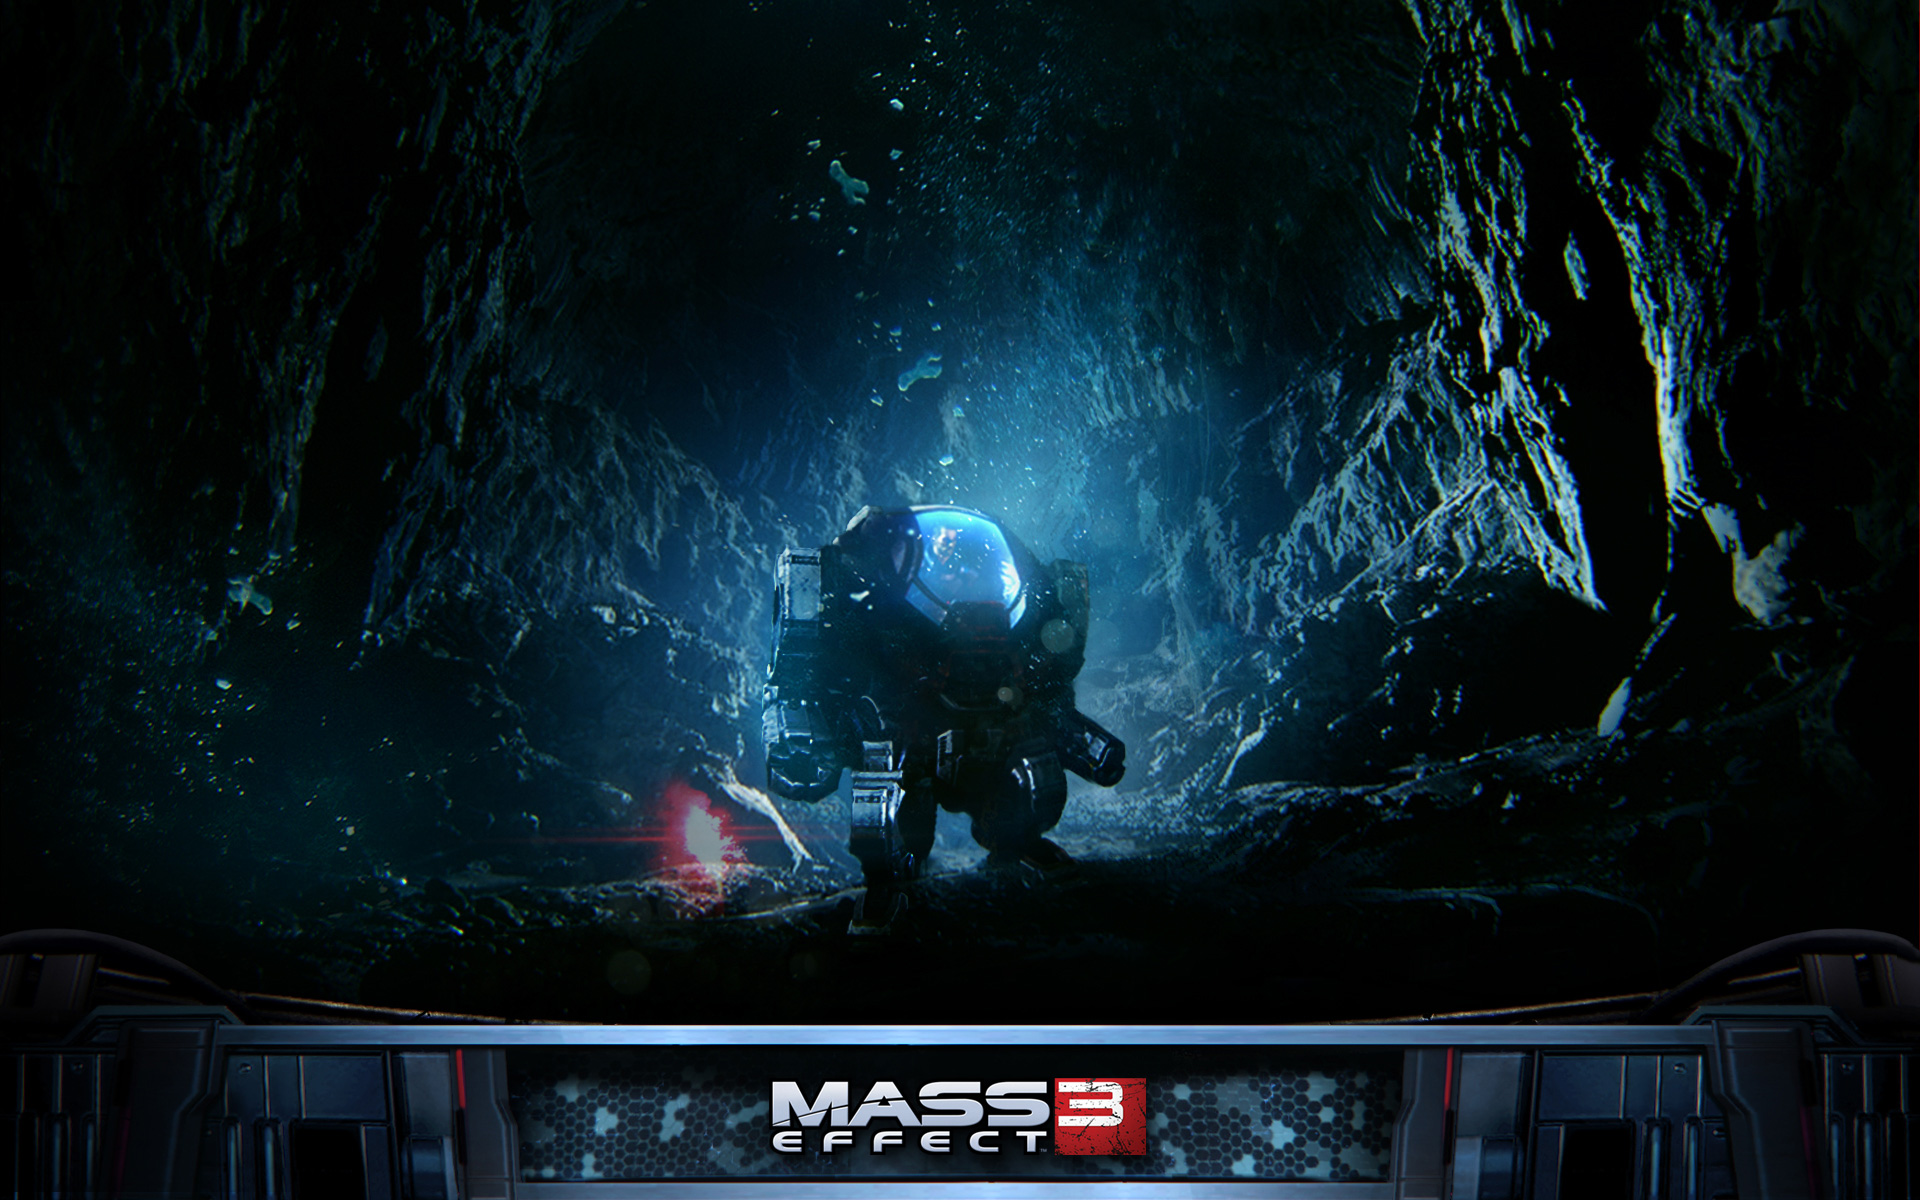 Free Mass Effect 3 Wallpaper In - Mass Effect 3 - HD Wallpaper 